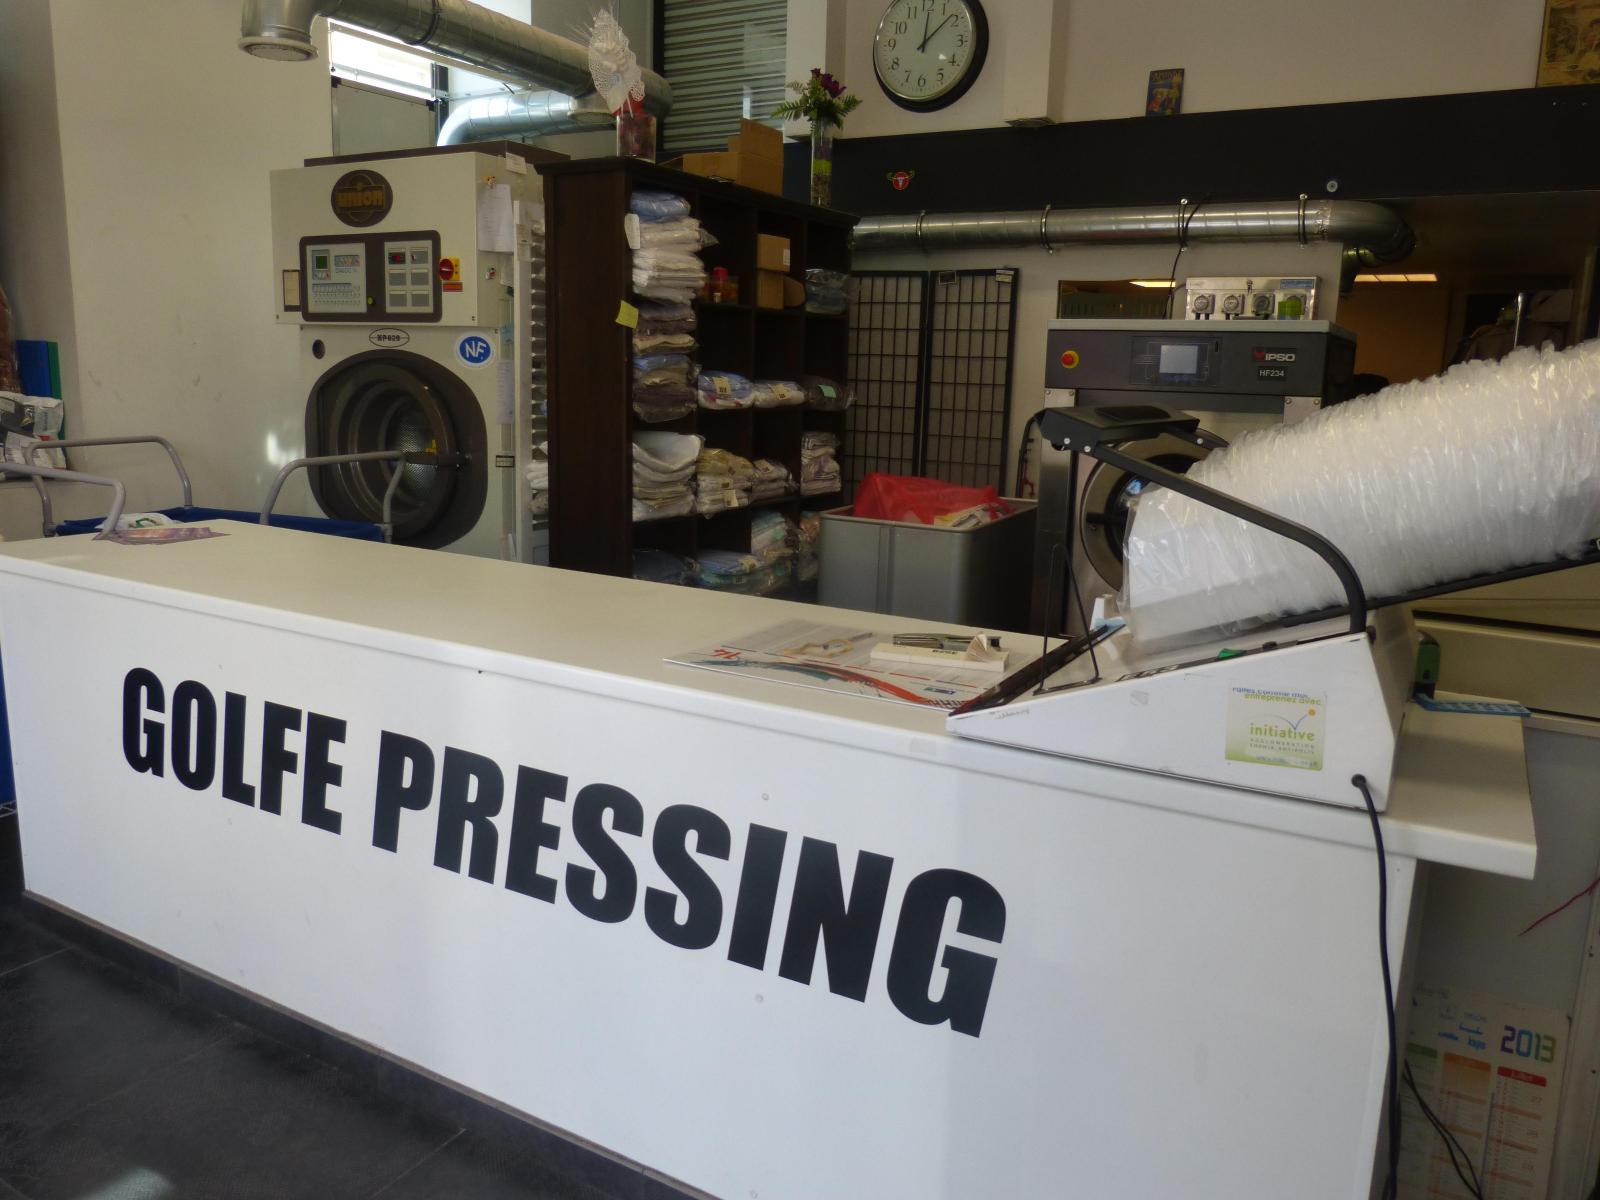 Golfe Pressing, accueil